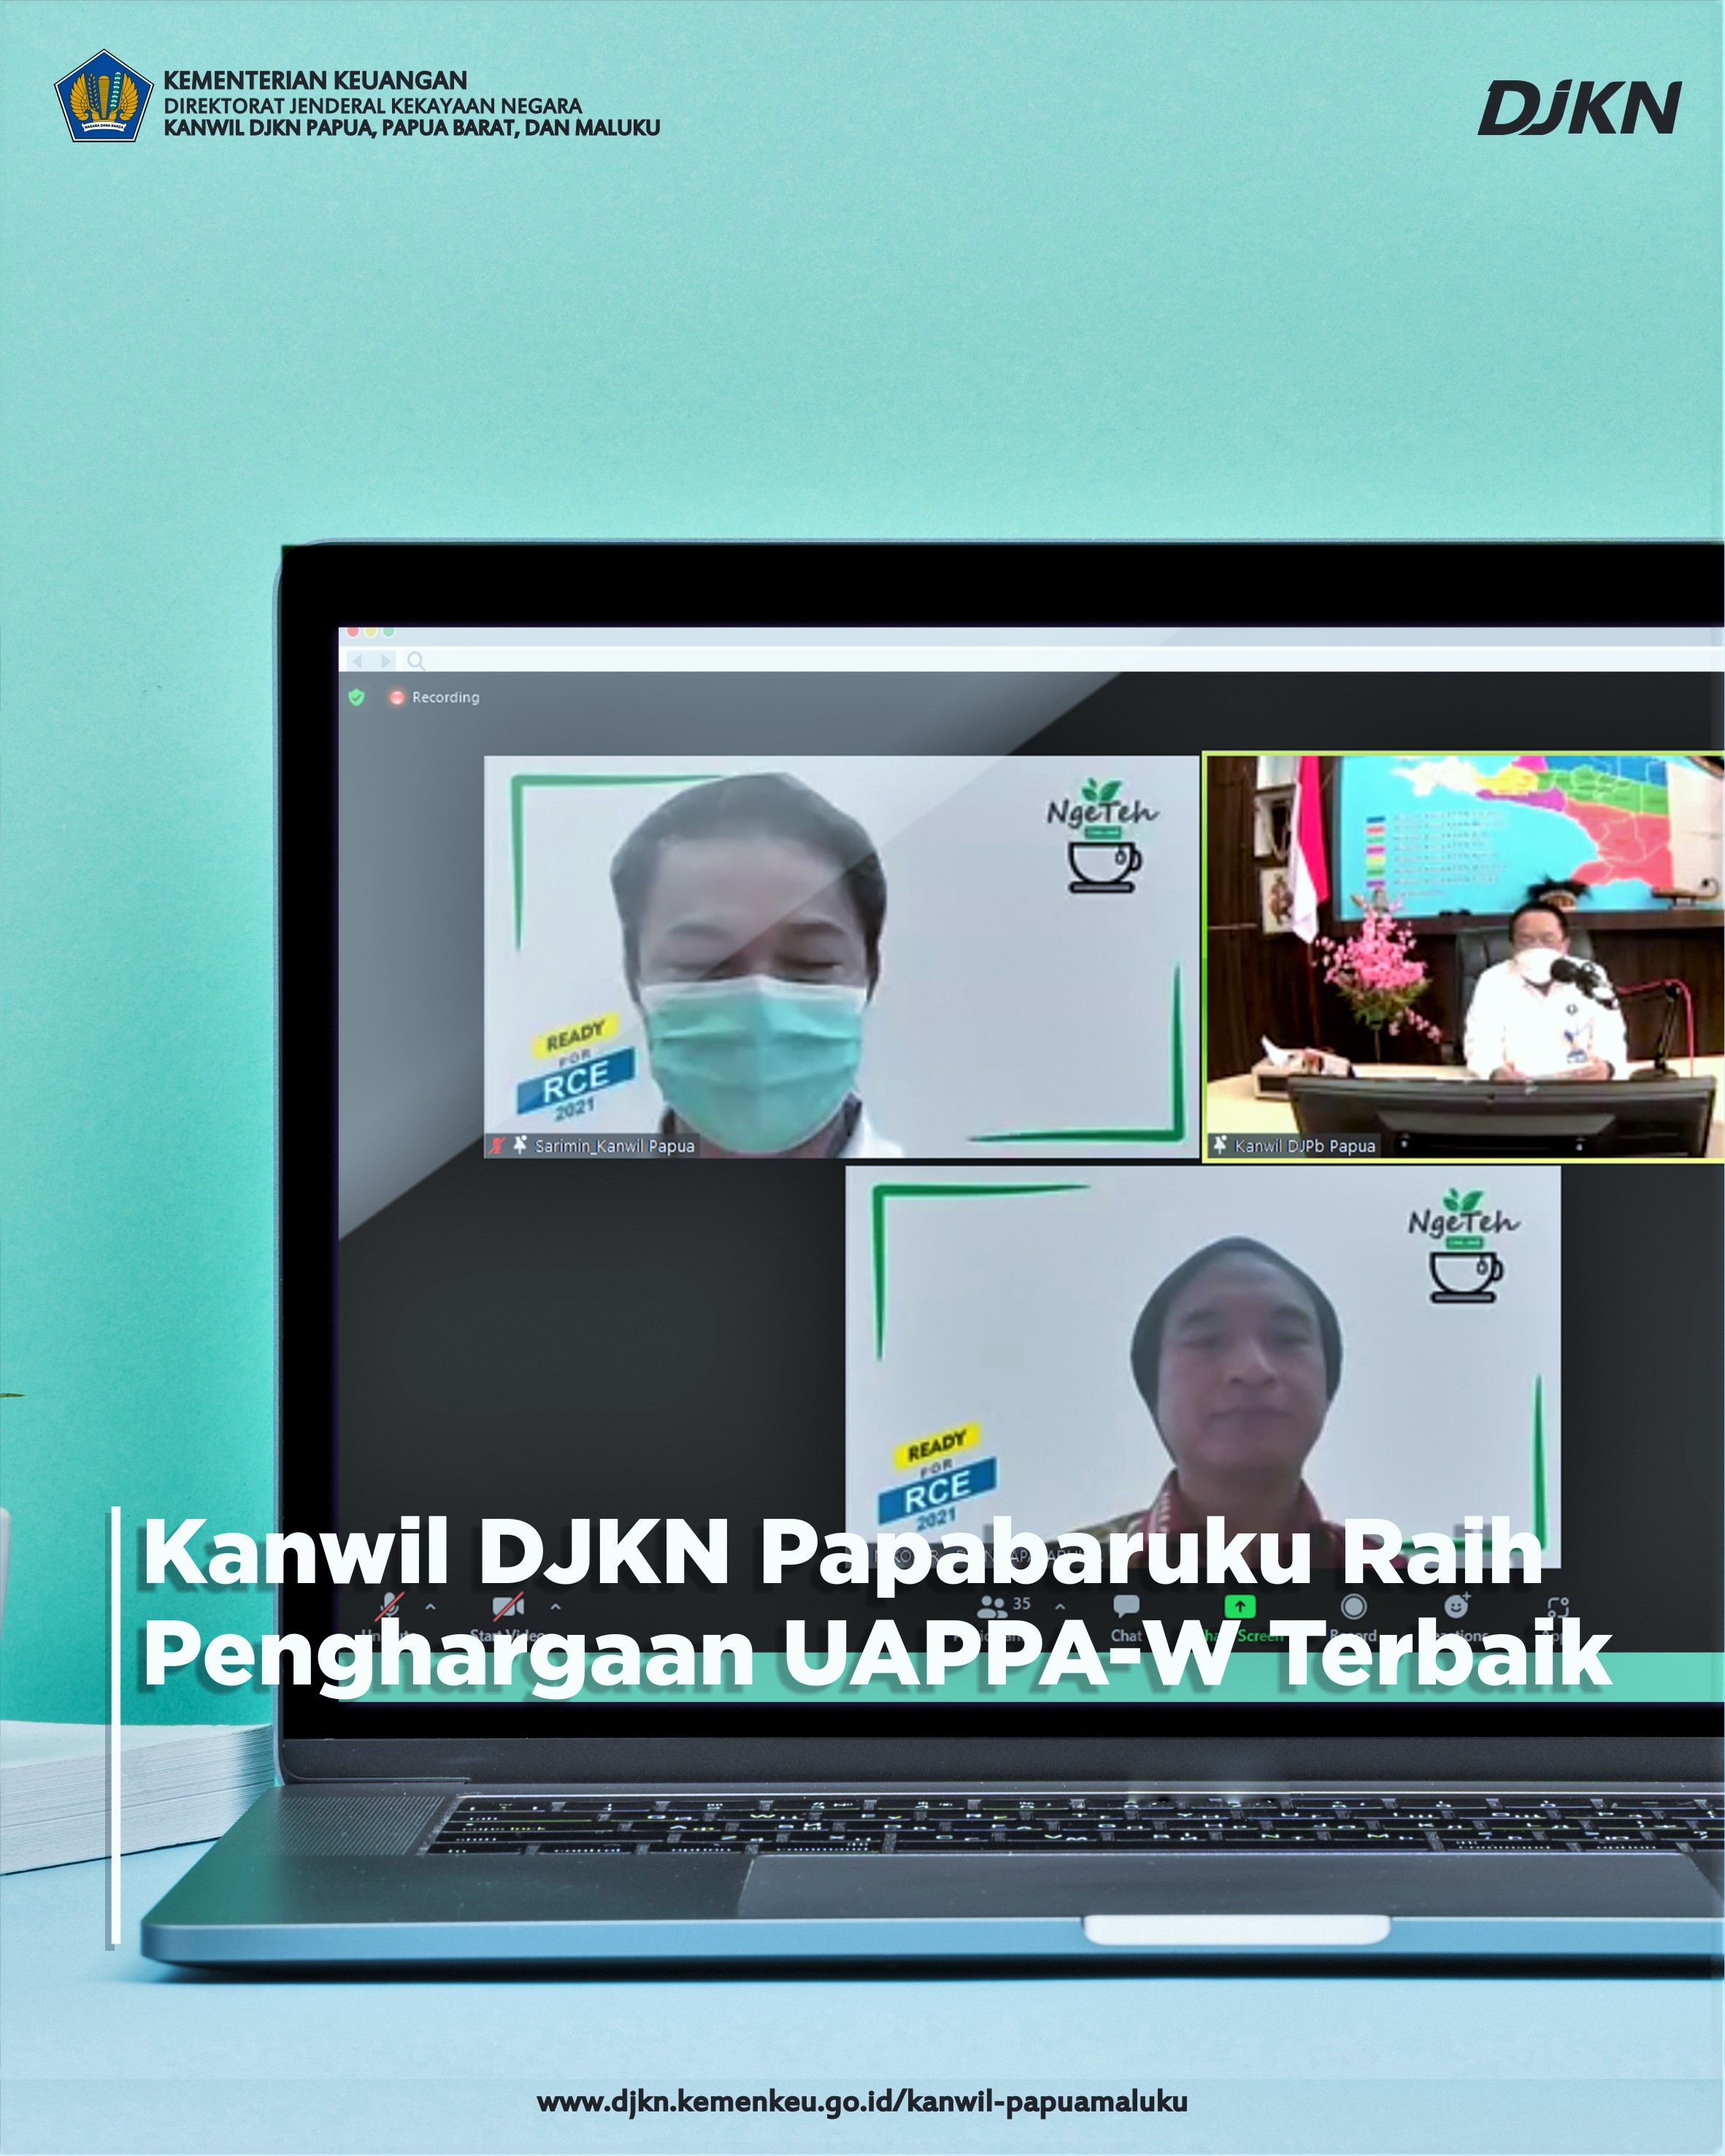 Kanwil DJKN Papabaruku Raih Penghargaan Sebagai UAPPA-W Terbaik Tahun 2021 Provinsi Papua